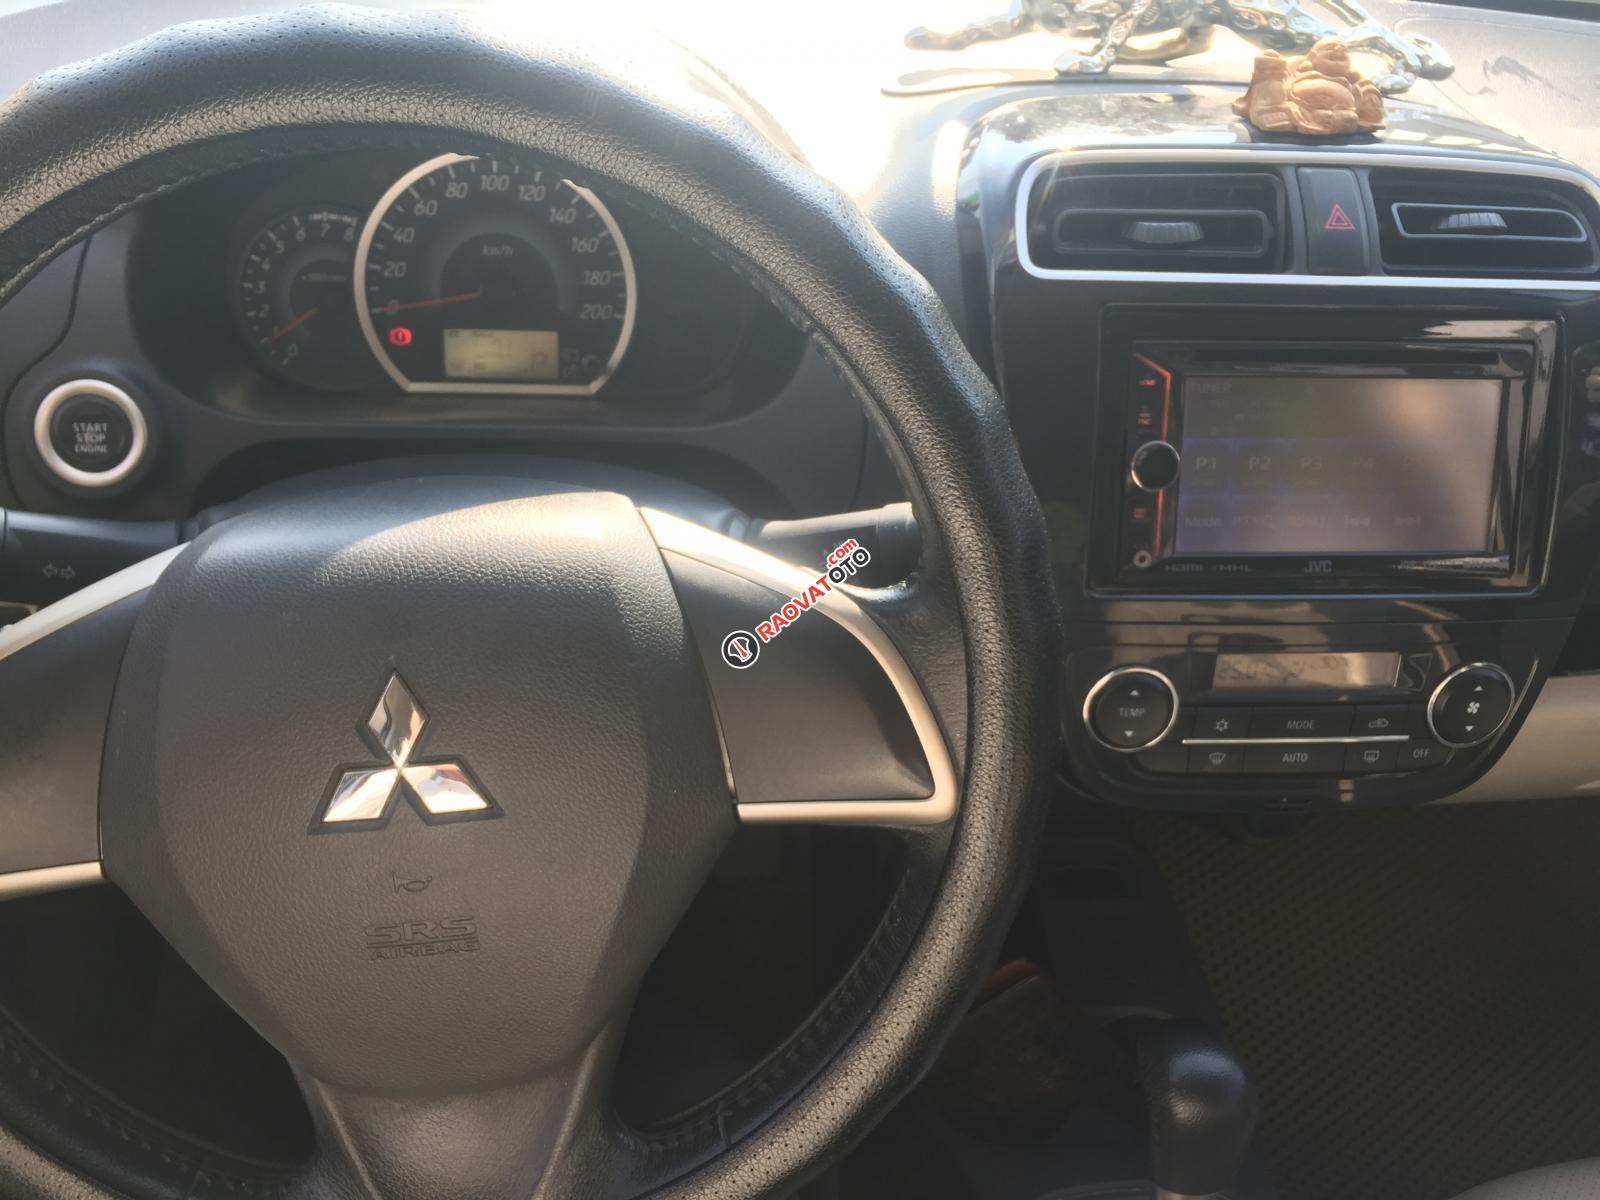 Cần bán xe Mitsubishi Attrage CVT cũ năm 2014 nhập khẩu, giá bán xe cũ tầm 350tr-0